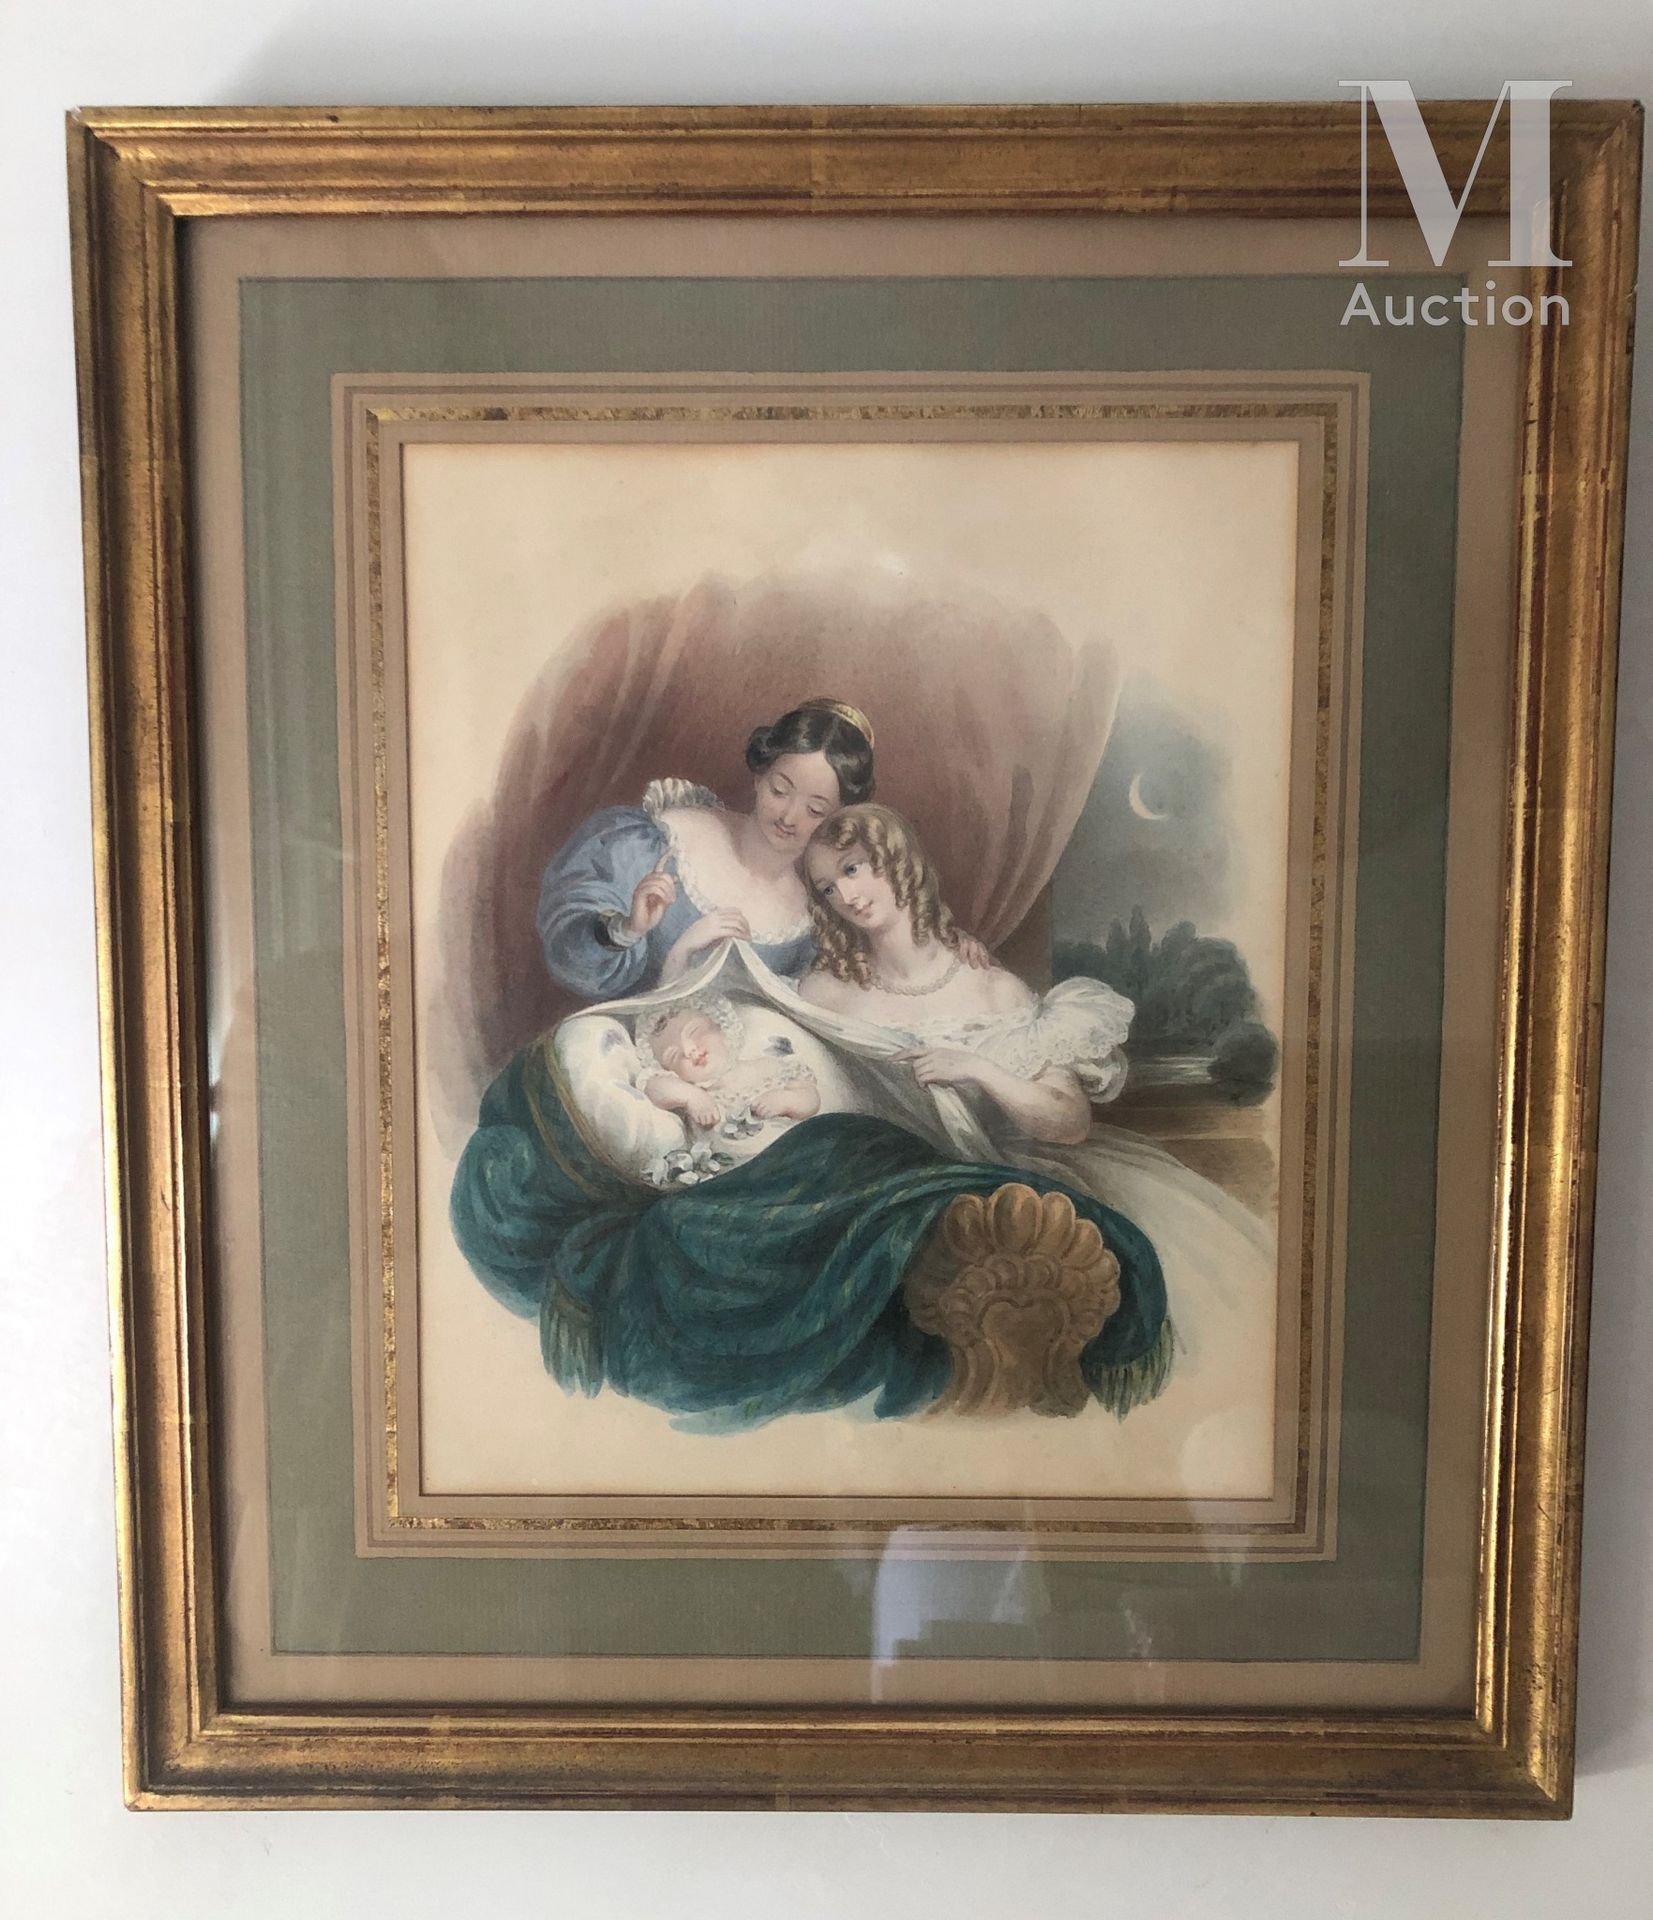 ECOLE FRANCAISE DU XIXème siècle Maternity scene

Watercolour 

23,5 x 19 cm.